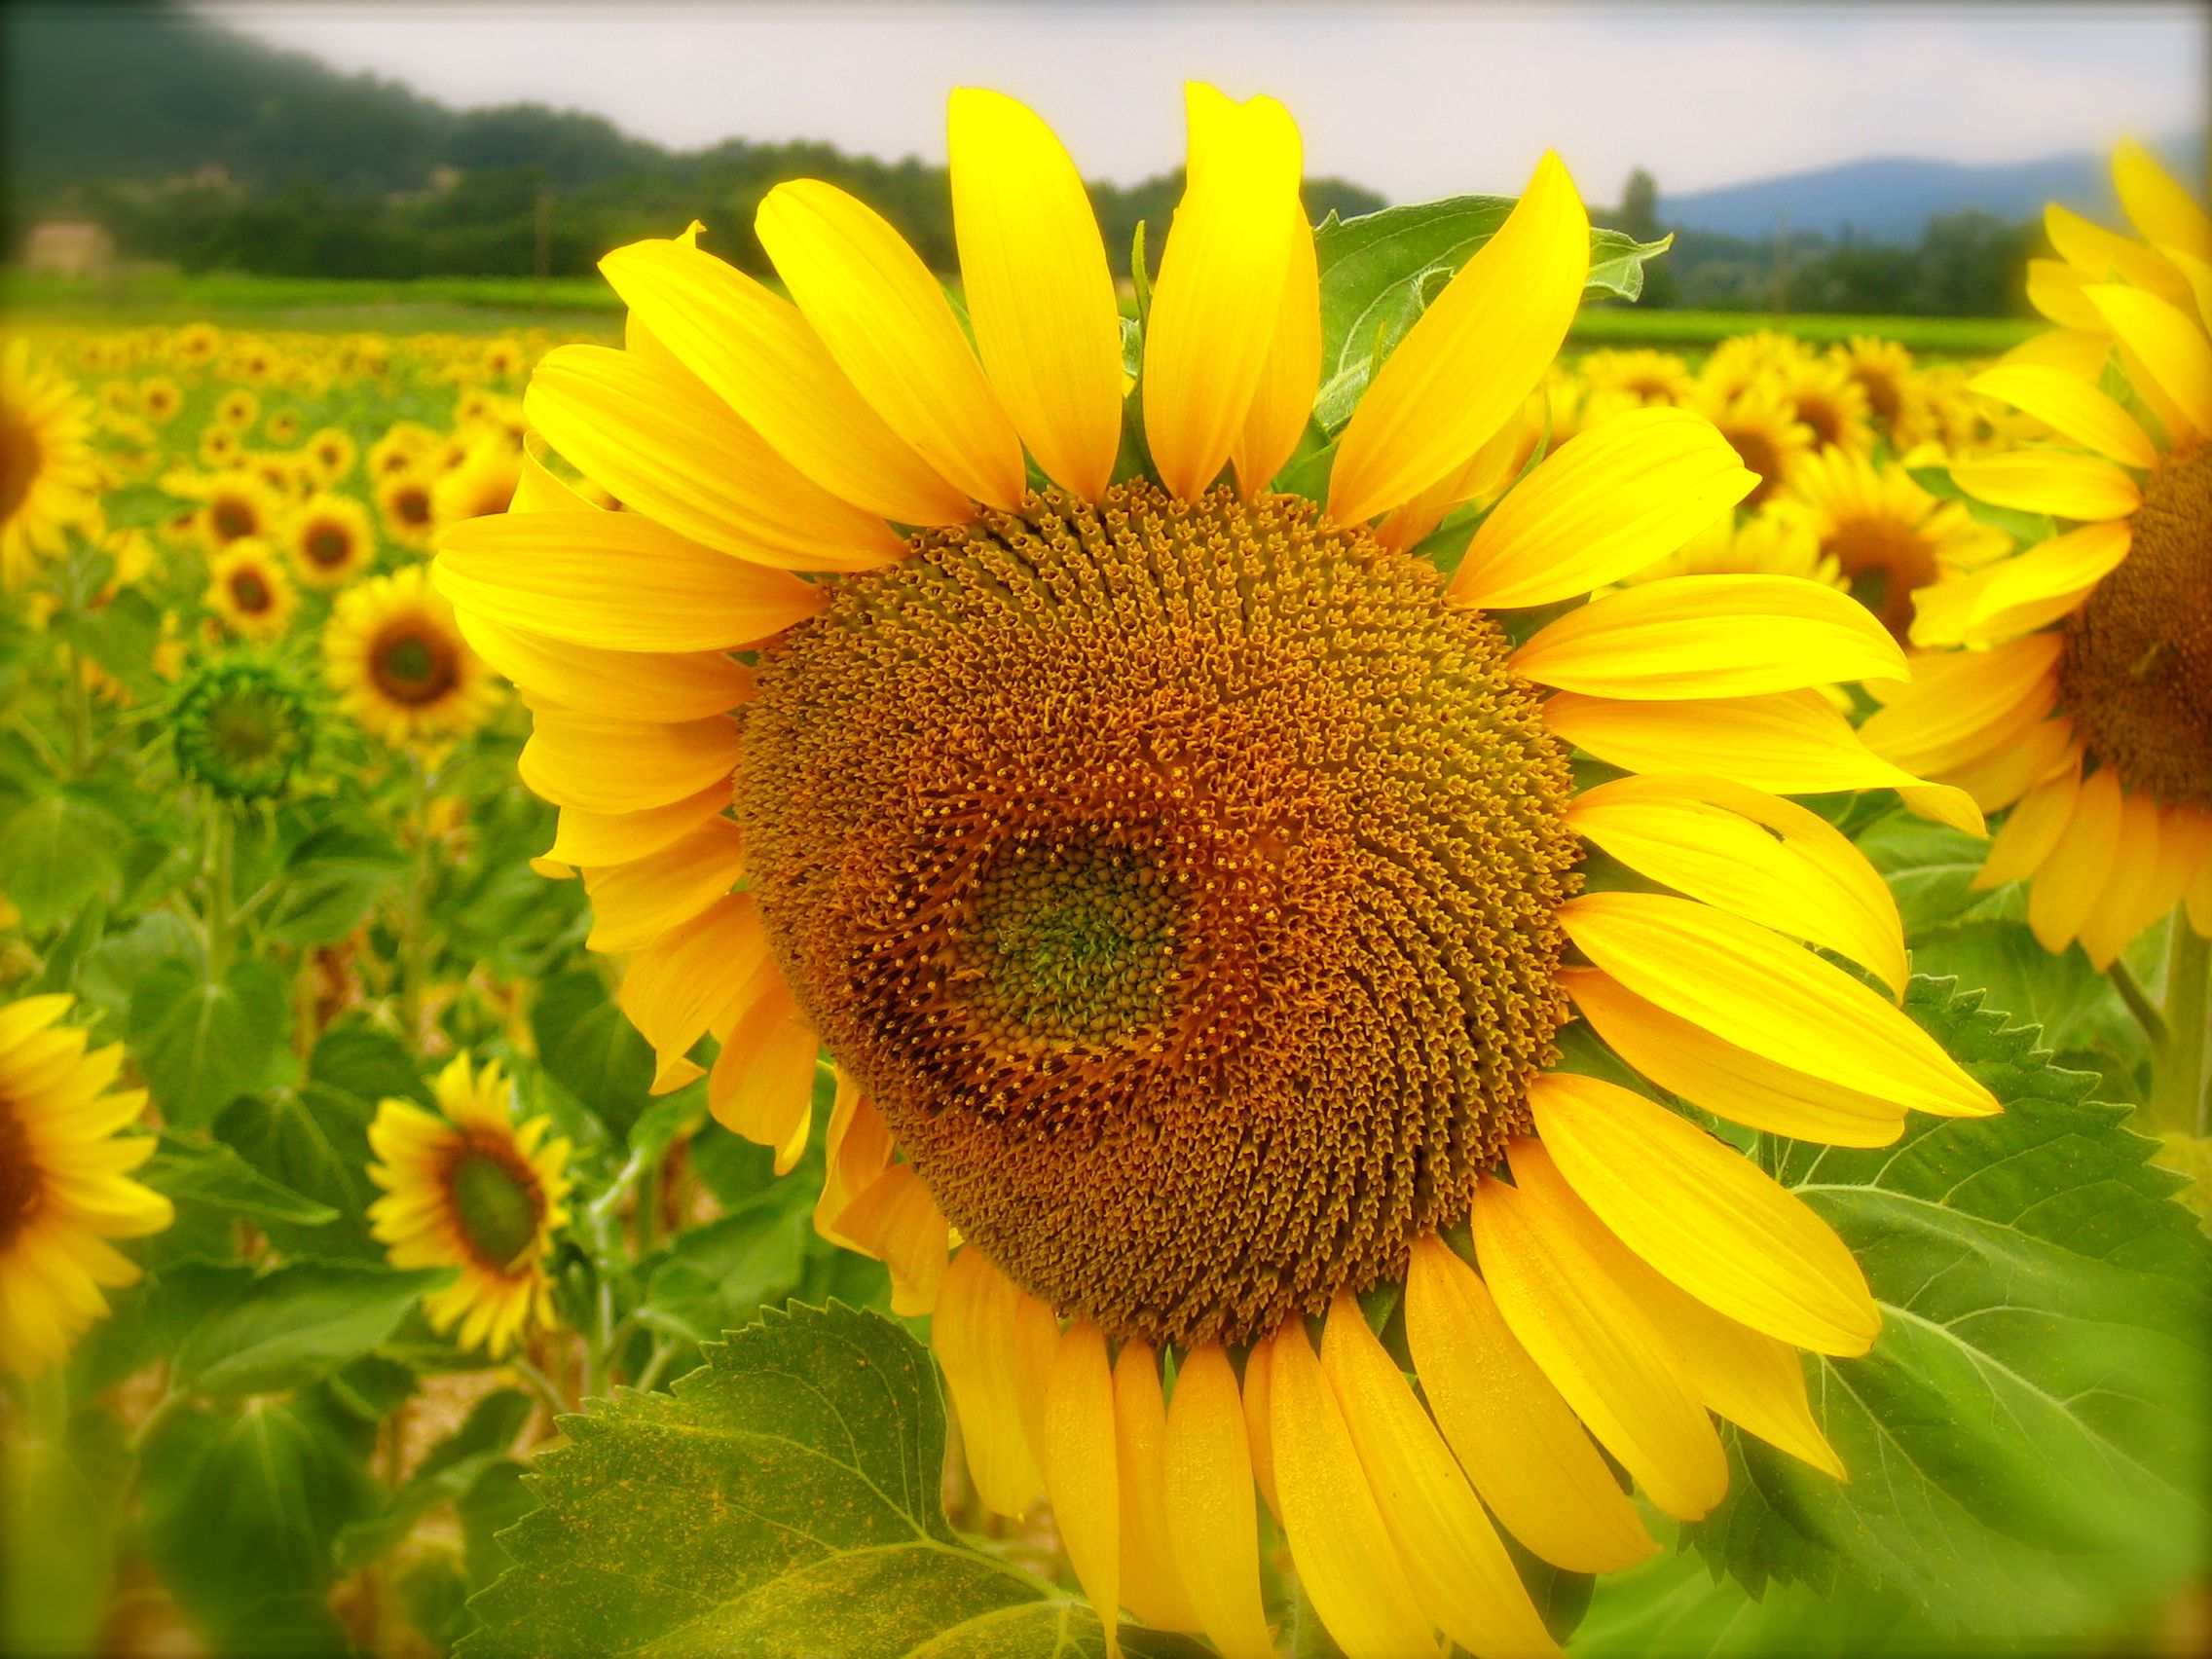 Provencal sunflower